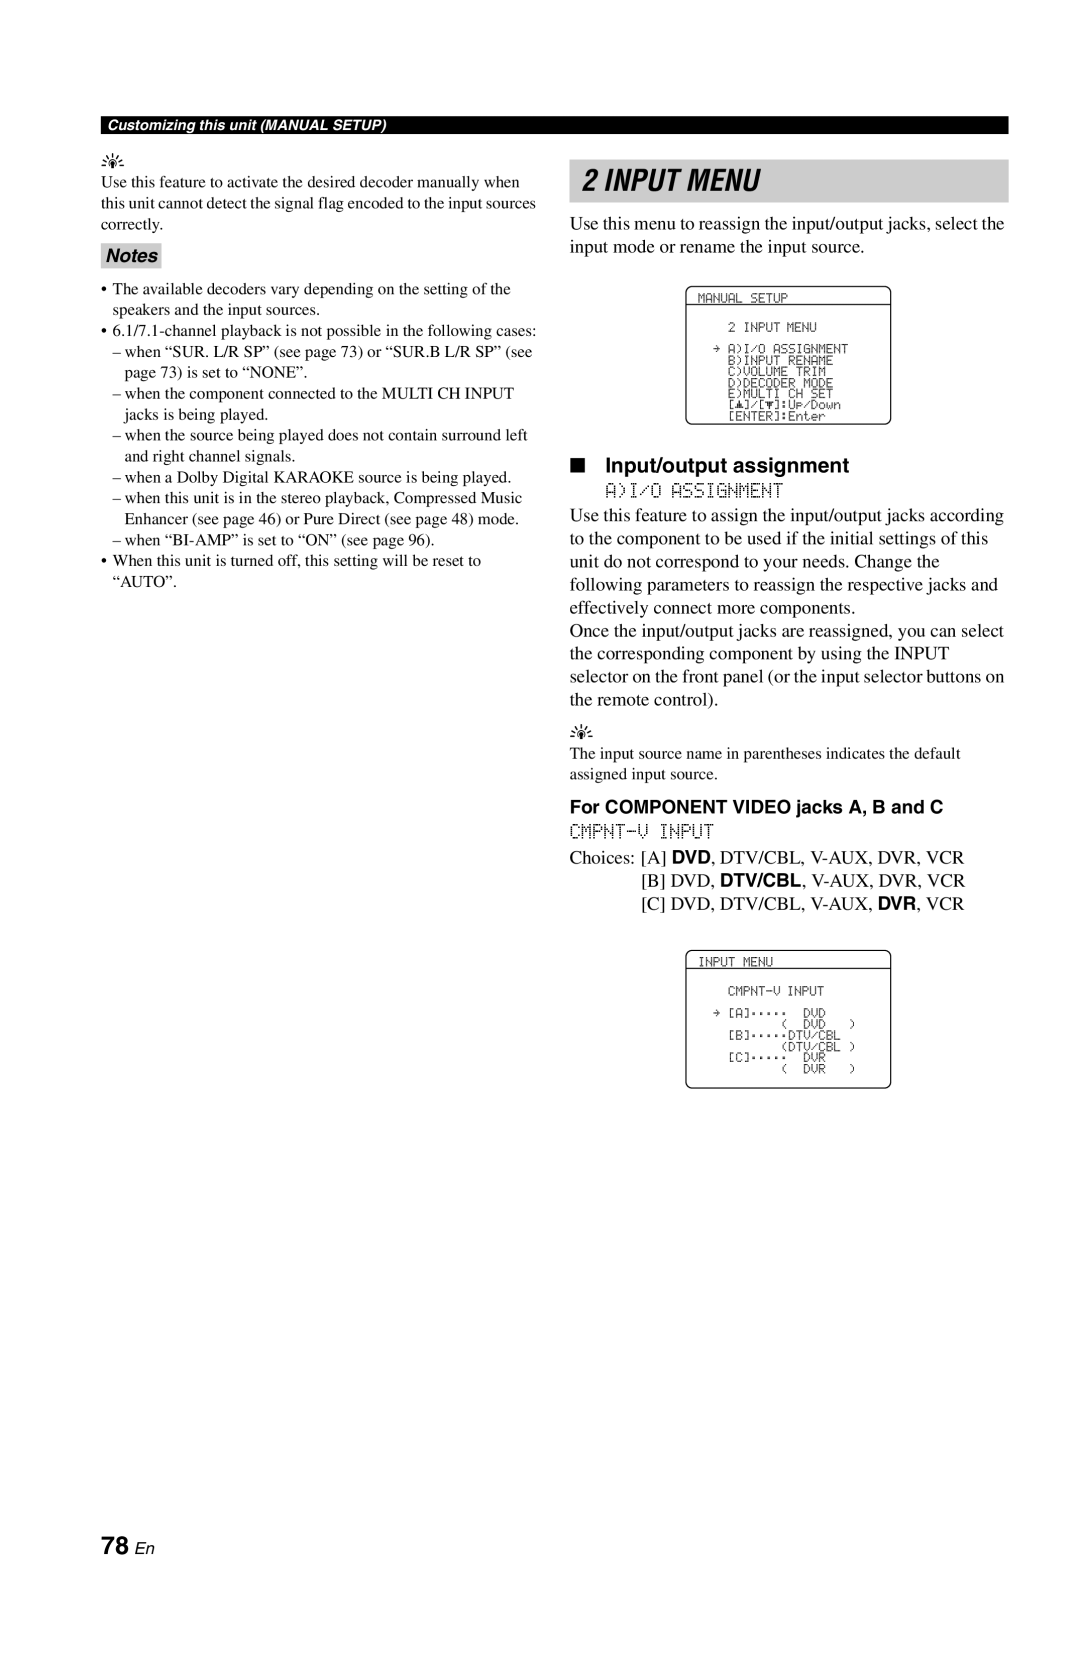 Yamaha RX-V861 owner manual Input Menu, 78 En, Input/output assignment, Notes 